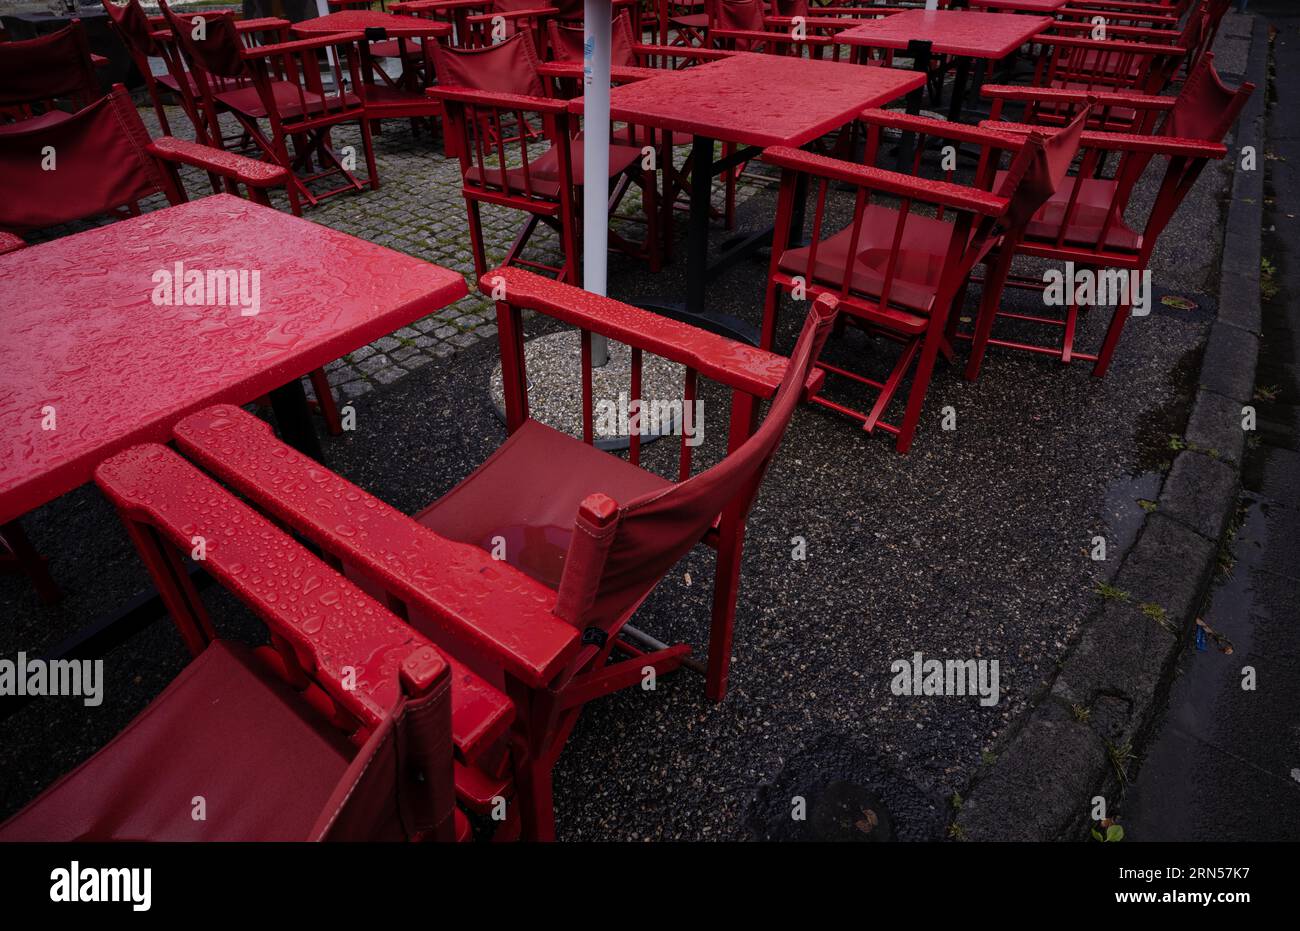 Cafe de la Place sotto la pioggia, piovoso, tavoli vuoti, rosso, Mont-Dore, dipartimento di Puy-de-Dome, regione Auvergne-Rodano-Alpes, Francia Foto Stock